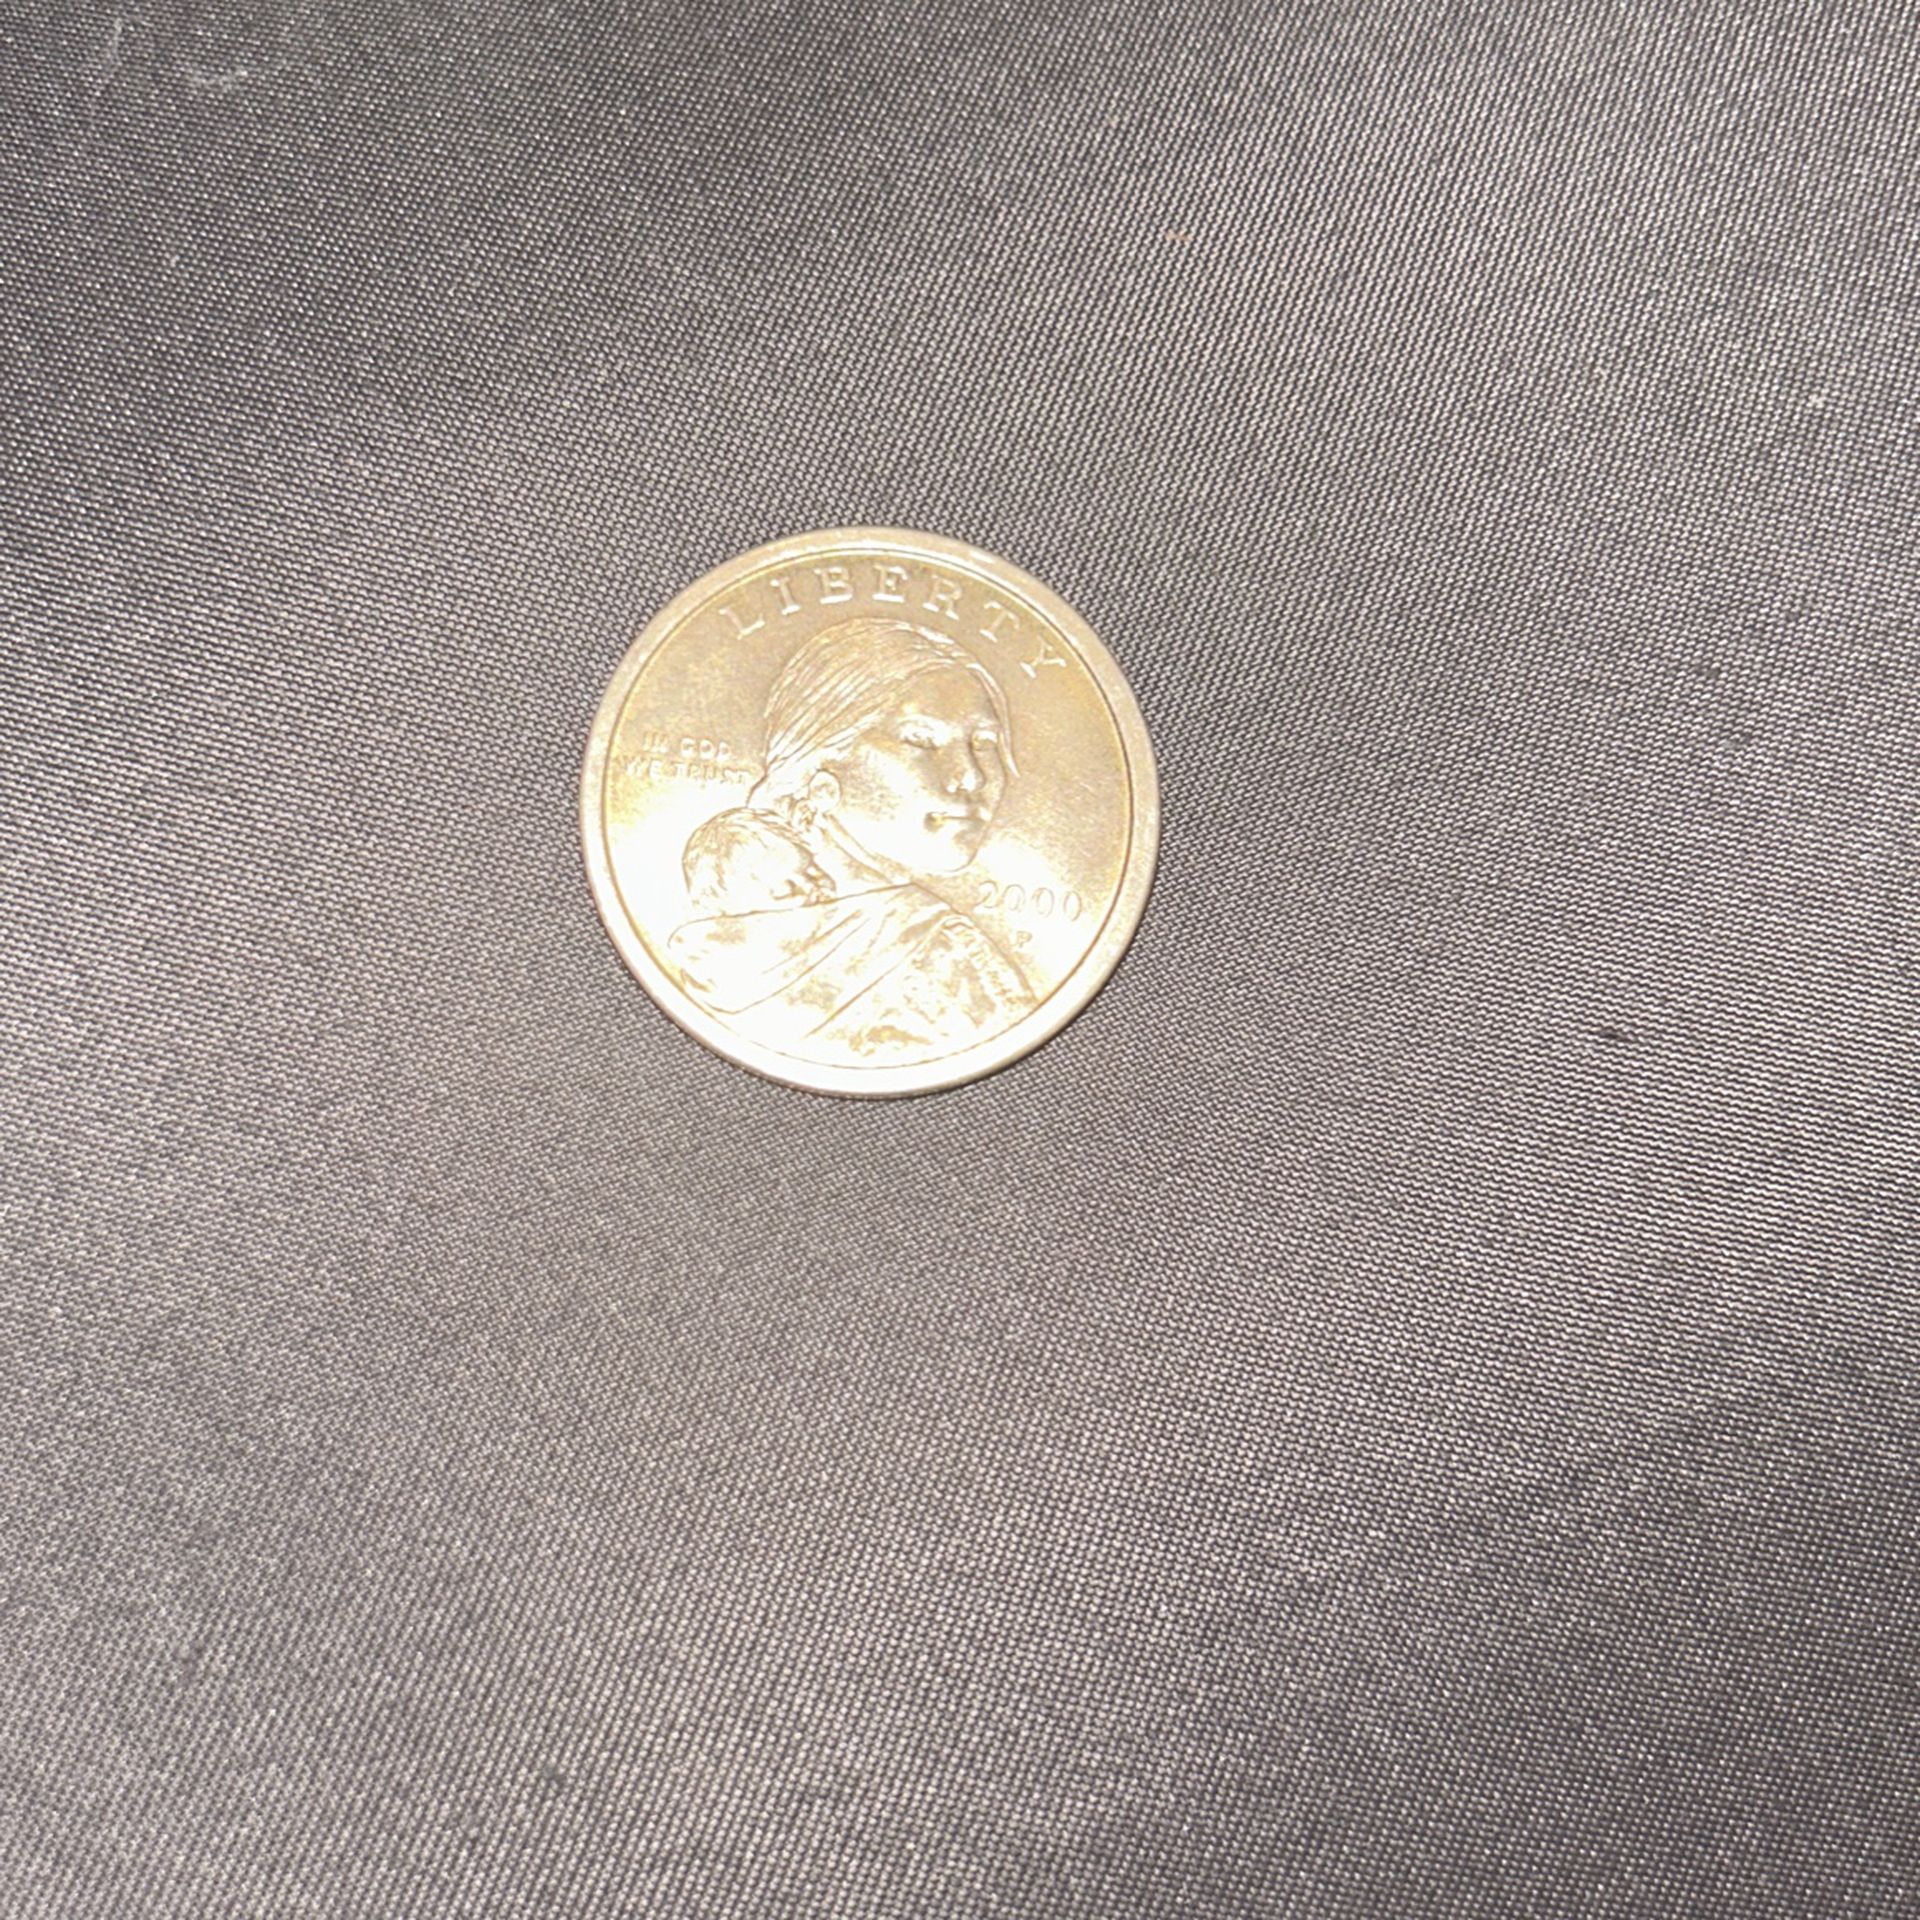 Rare Liberty Coin 2000 P